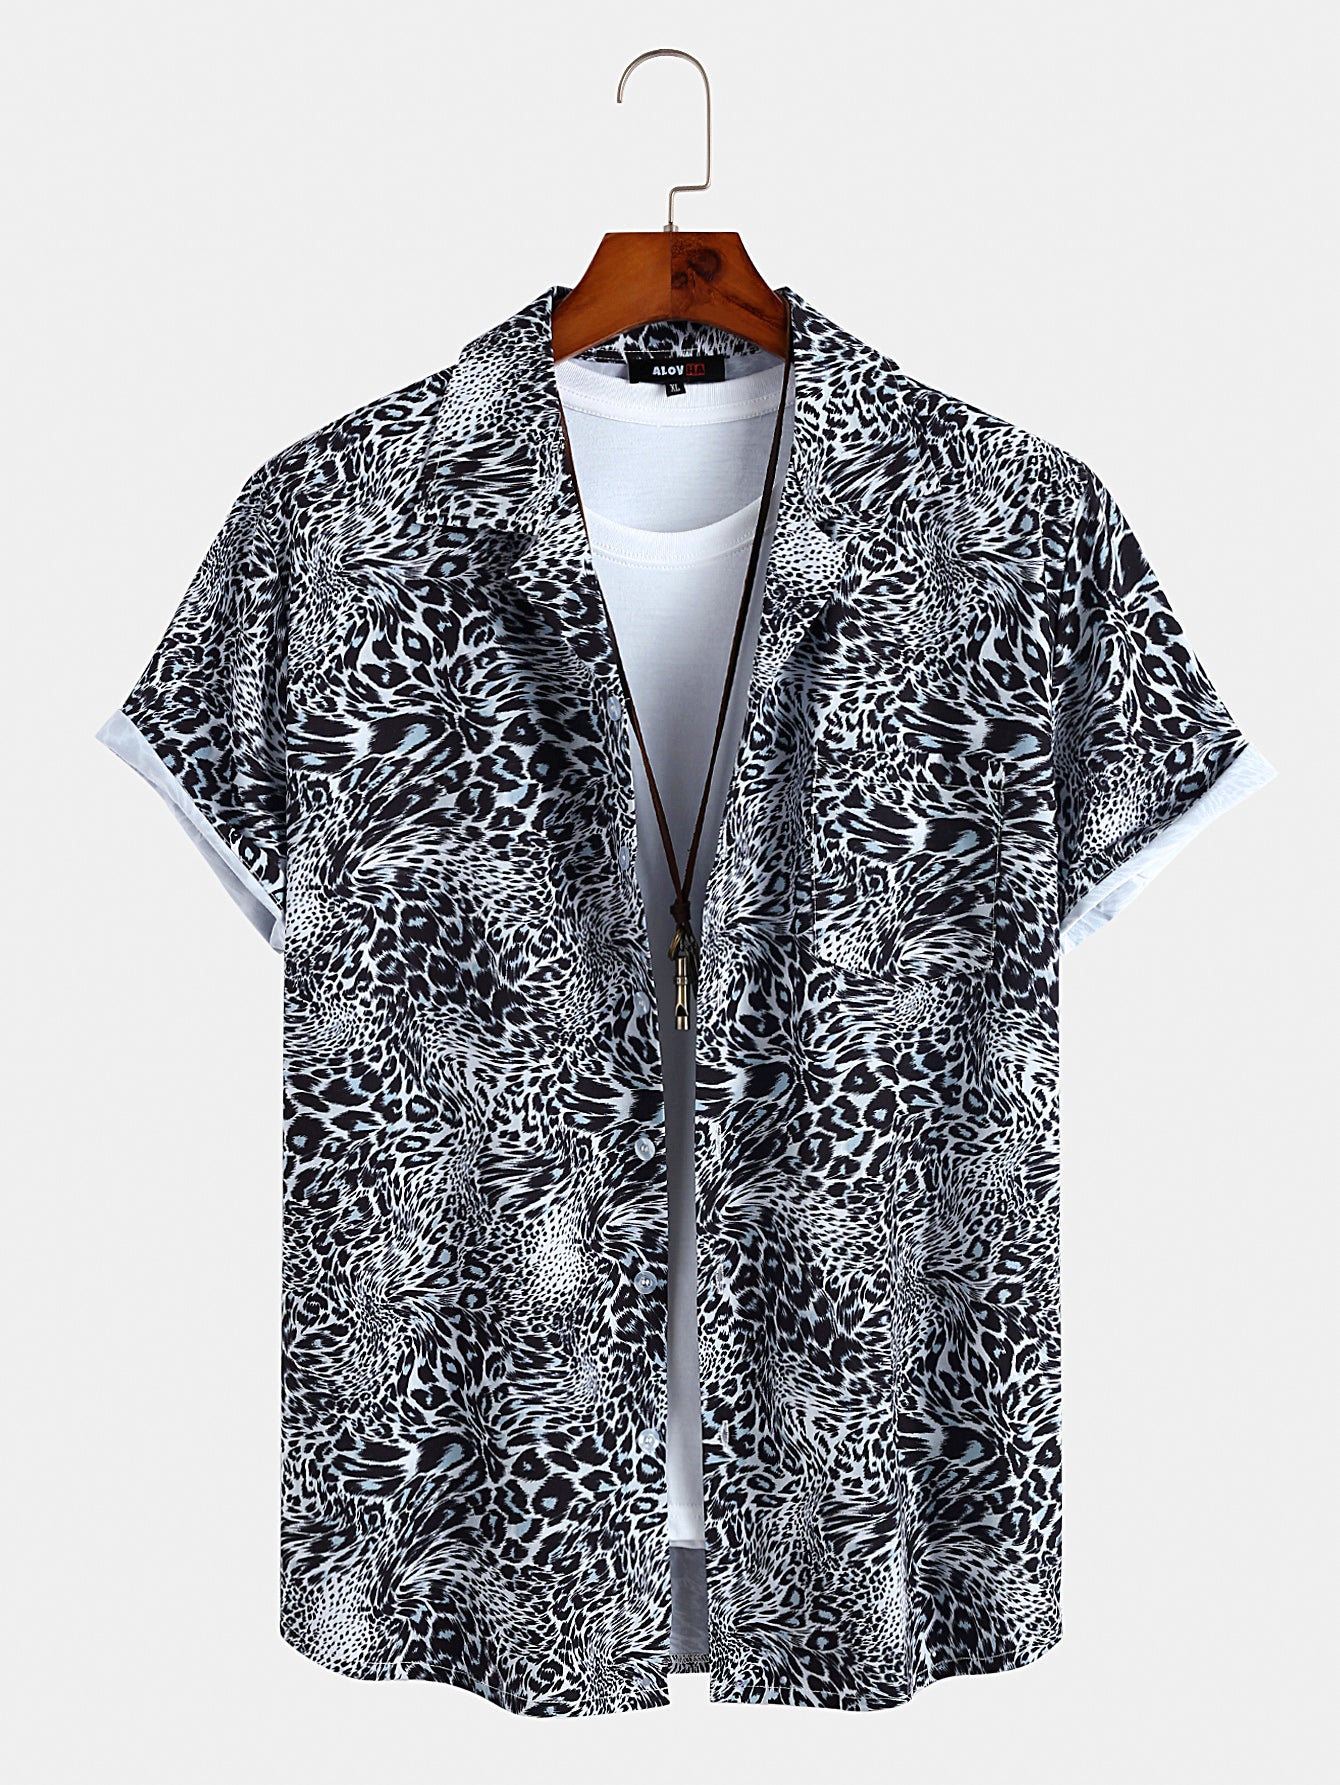 Resort Leopard Print Button Up Shirt